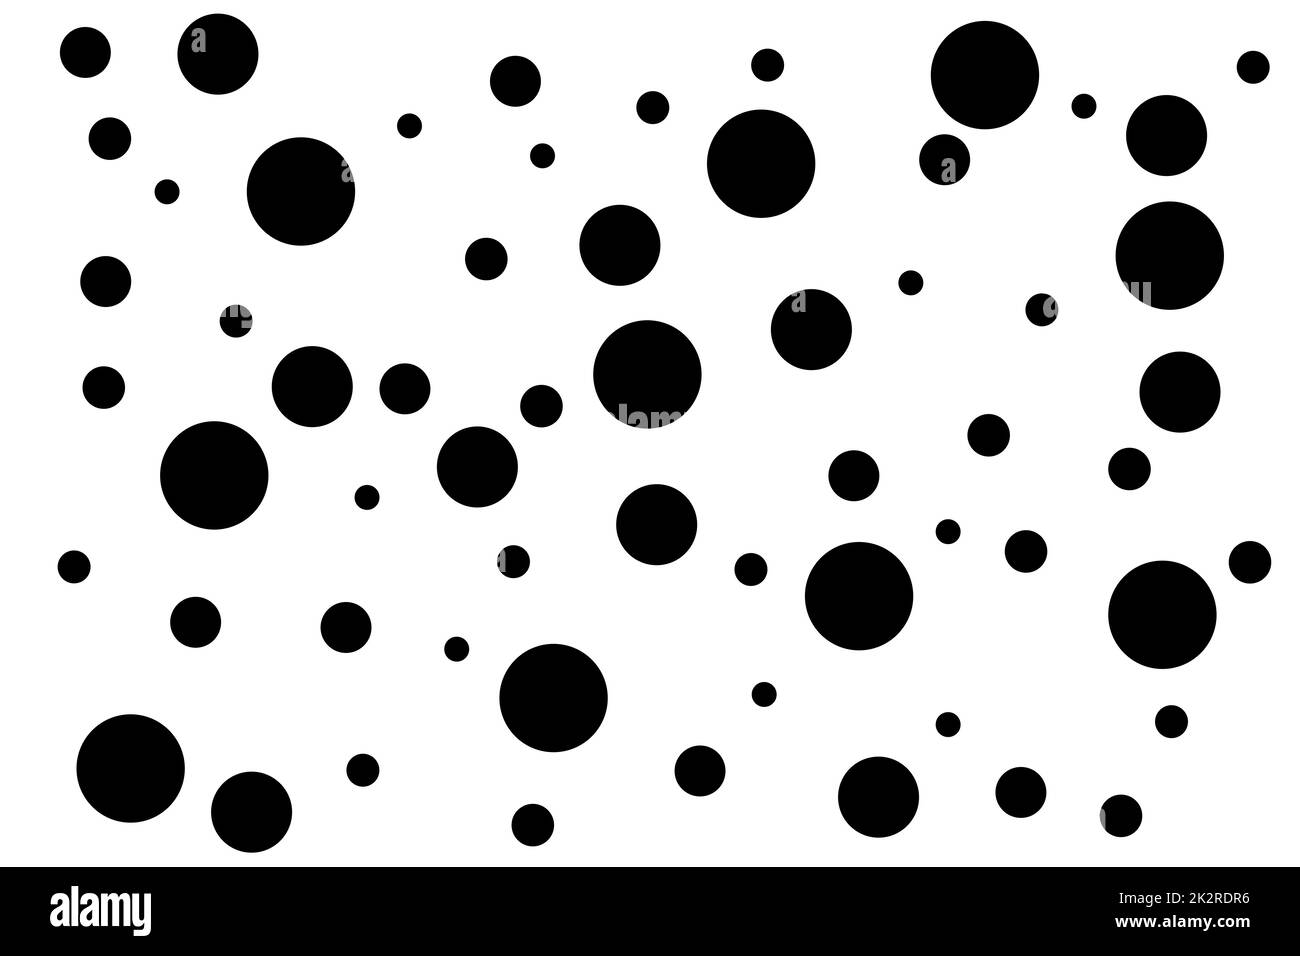 Arrière-plan avec points noirs sur blanc Banque D'Images